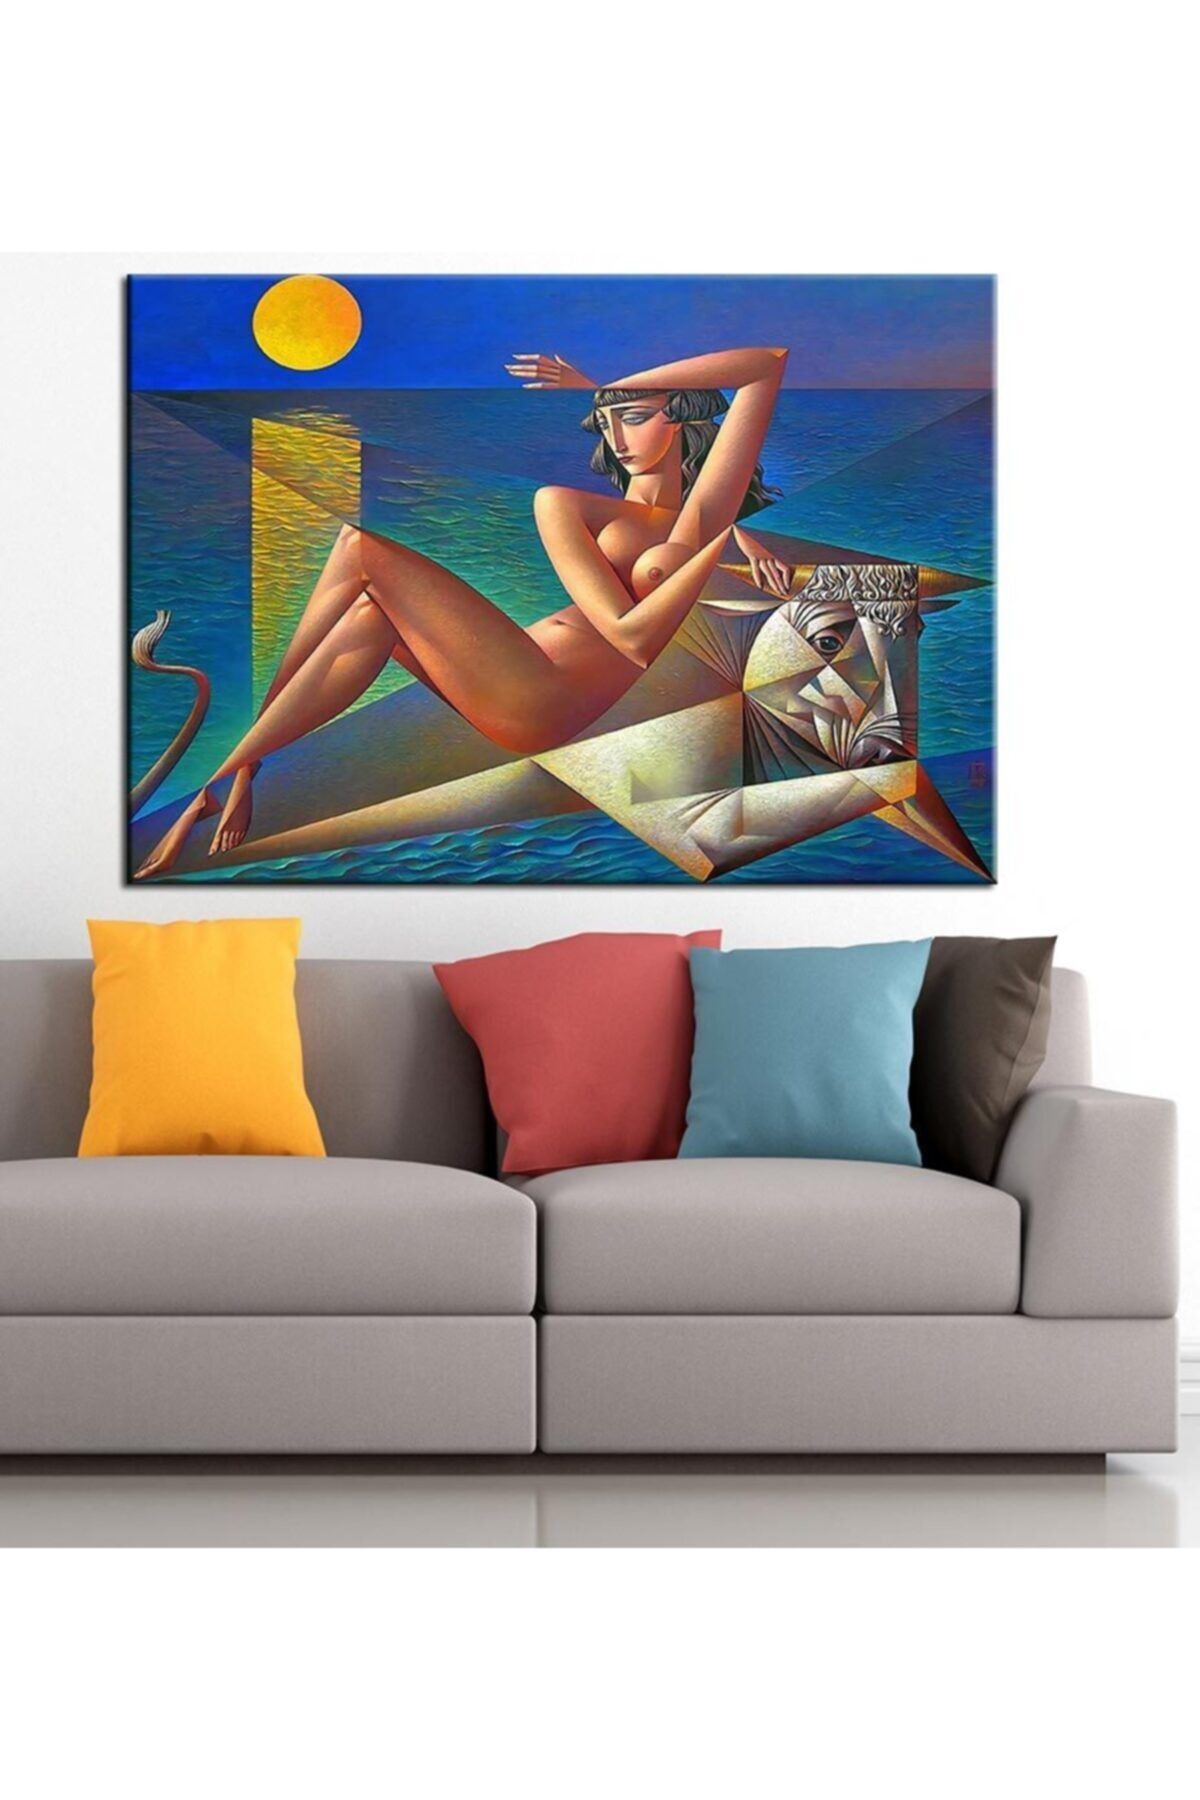 caddeko Kadın ve Boğa Nü Kübik Yağlı Boya Görünüm Kanvas Tablo 50x70cm